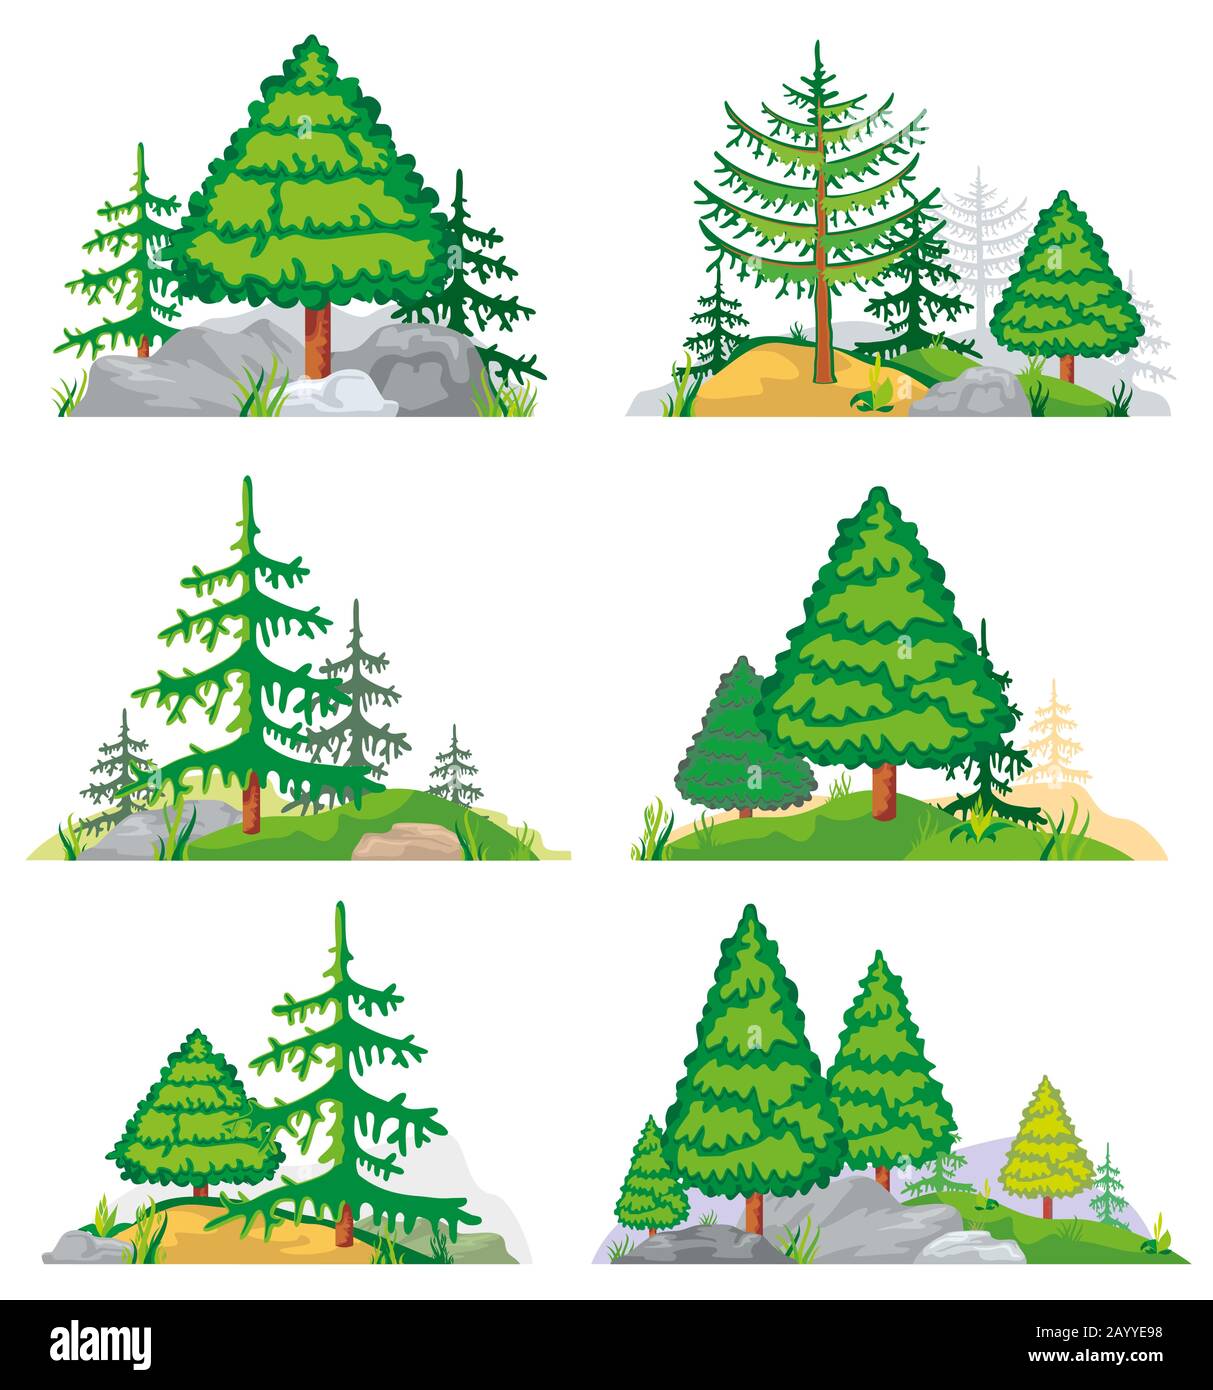 Landschaften mit Nadelbäumen, Gras und Steinen. Vektor-Landschaft Natur mit Baum und Pflanze. Darstellung der Waldlandschaft des Sets Stock Vektor